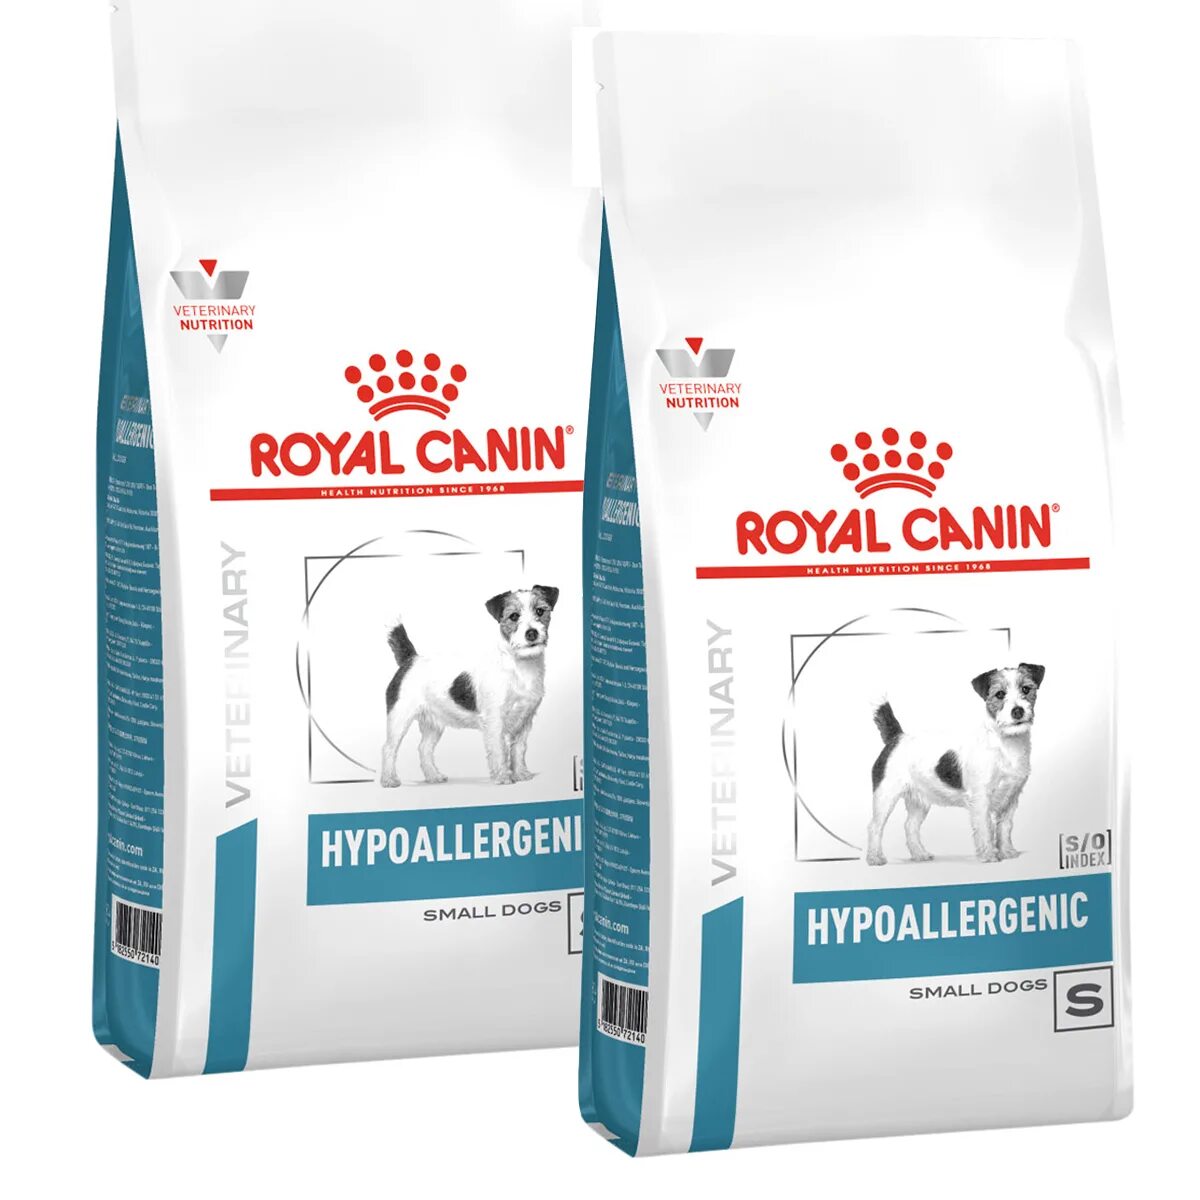 Royal Canin Hypoallergenic dr21. Роял Канин для собак Anallergenic 18. Роял Канин Гипоаллердженик для собак 14кг. Гипоаллергенный корм для собак Роял Канин Hypoallergenic.